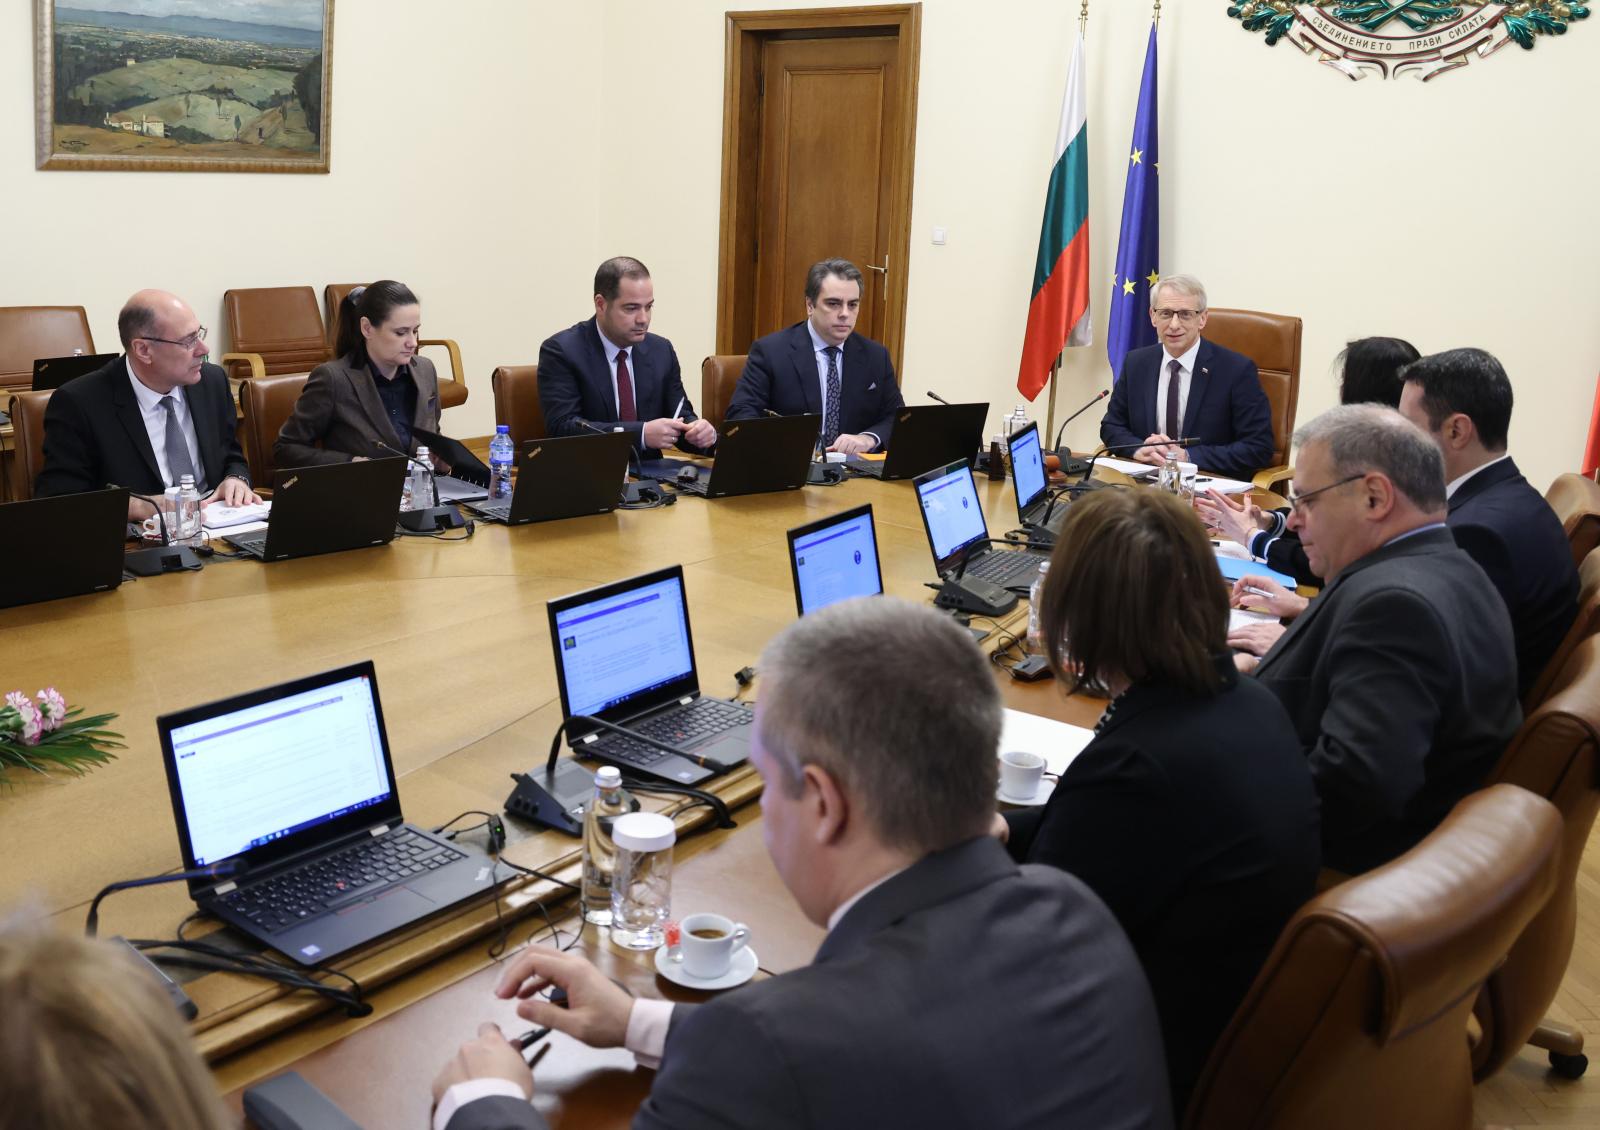 Denkov: Bulgaristan’ı daha iyi hale getirecek sonuçlar için çalışmaya devam edeceğiz